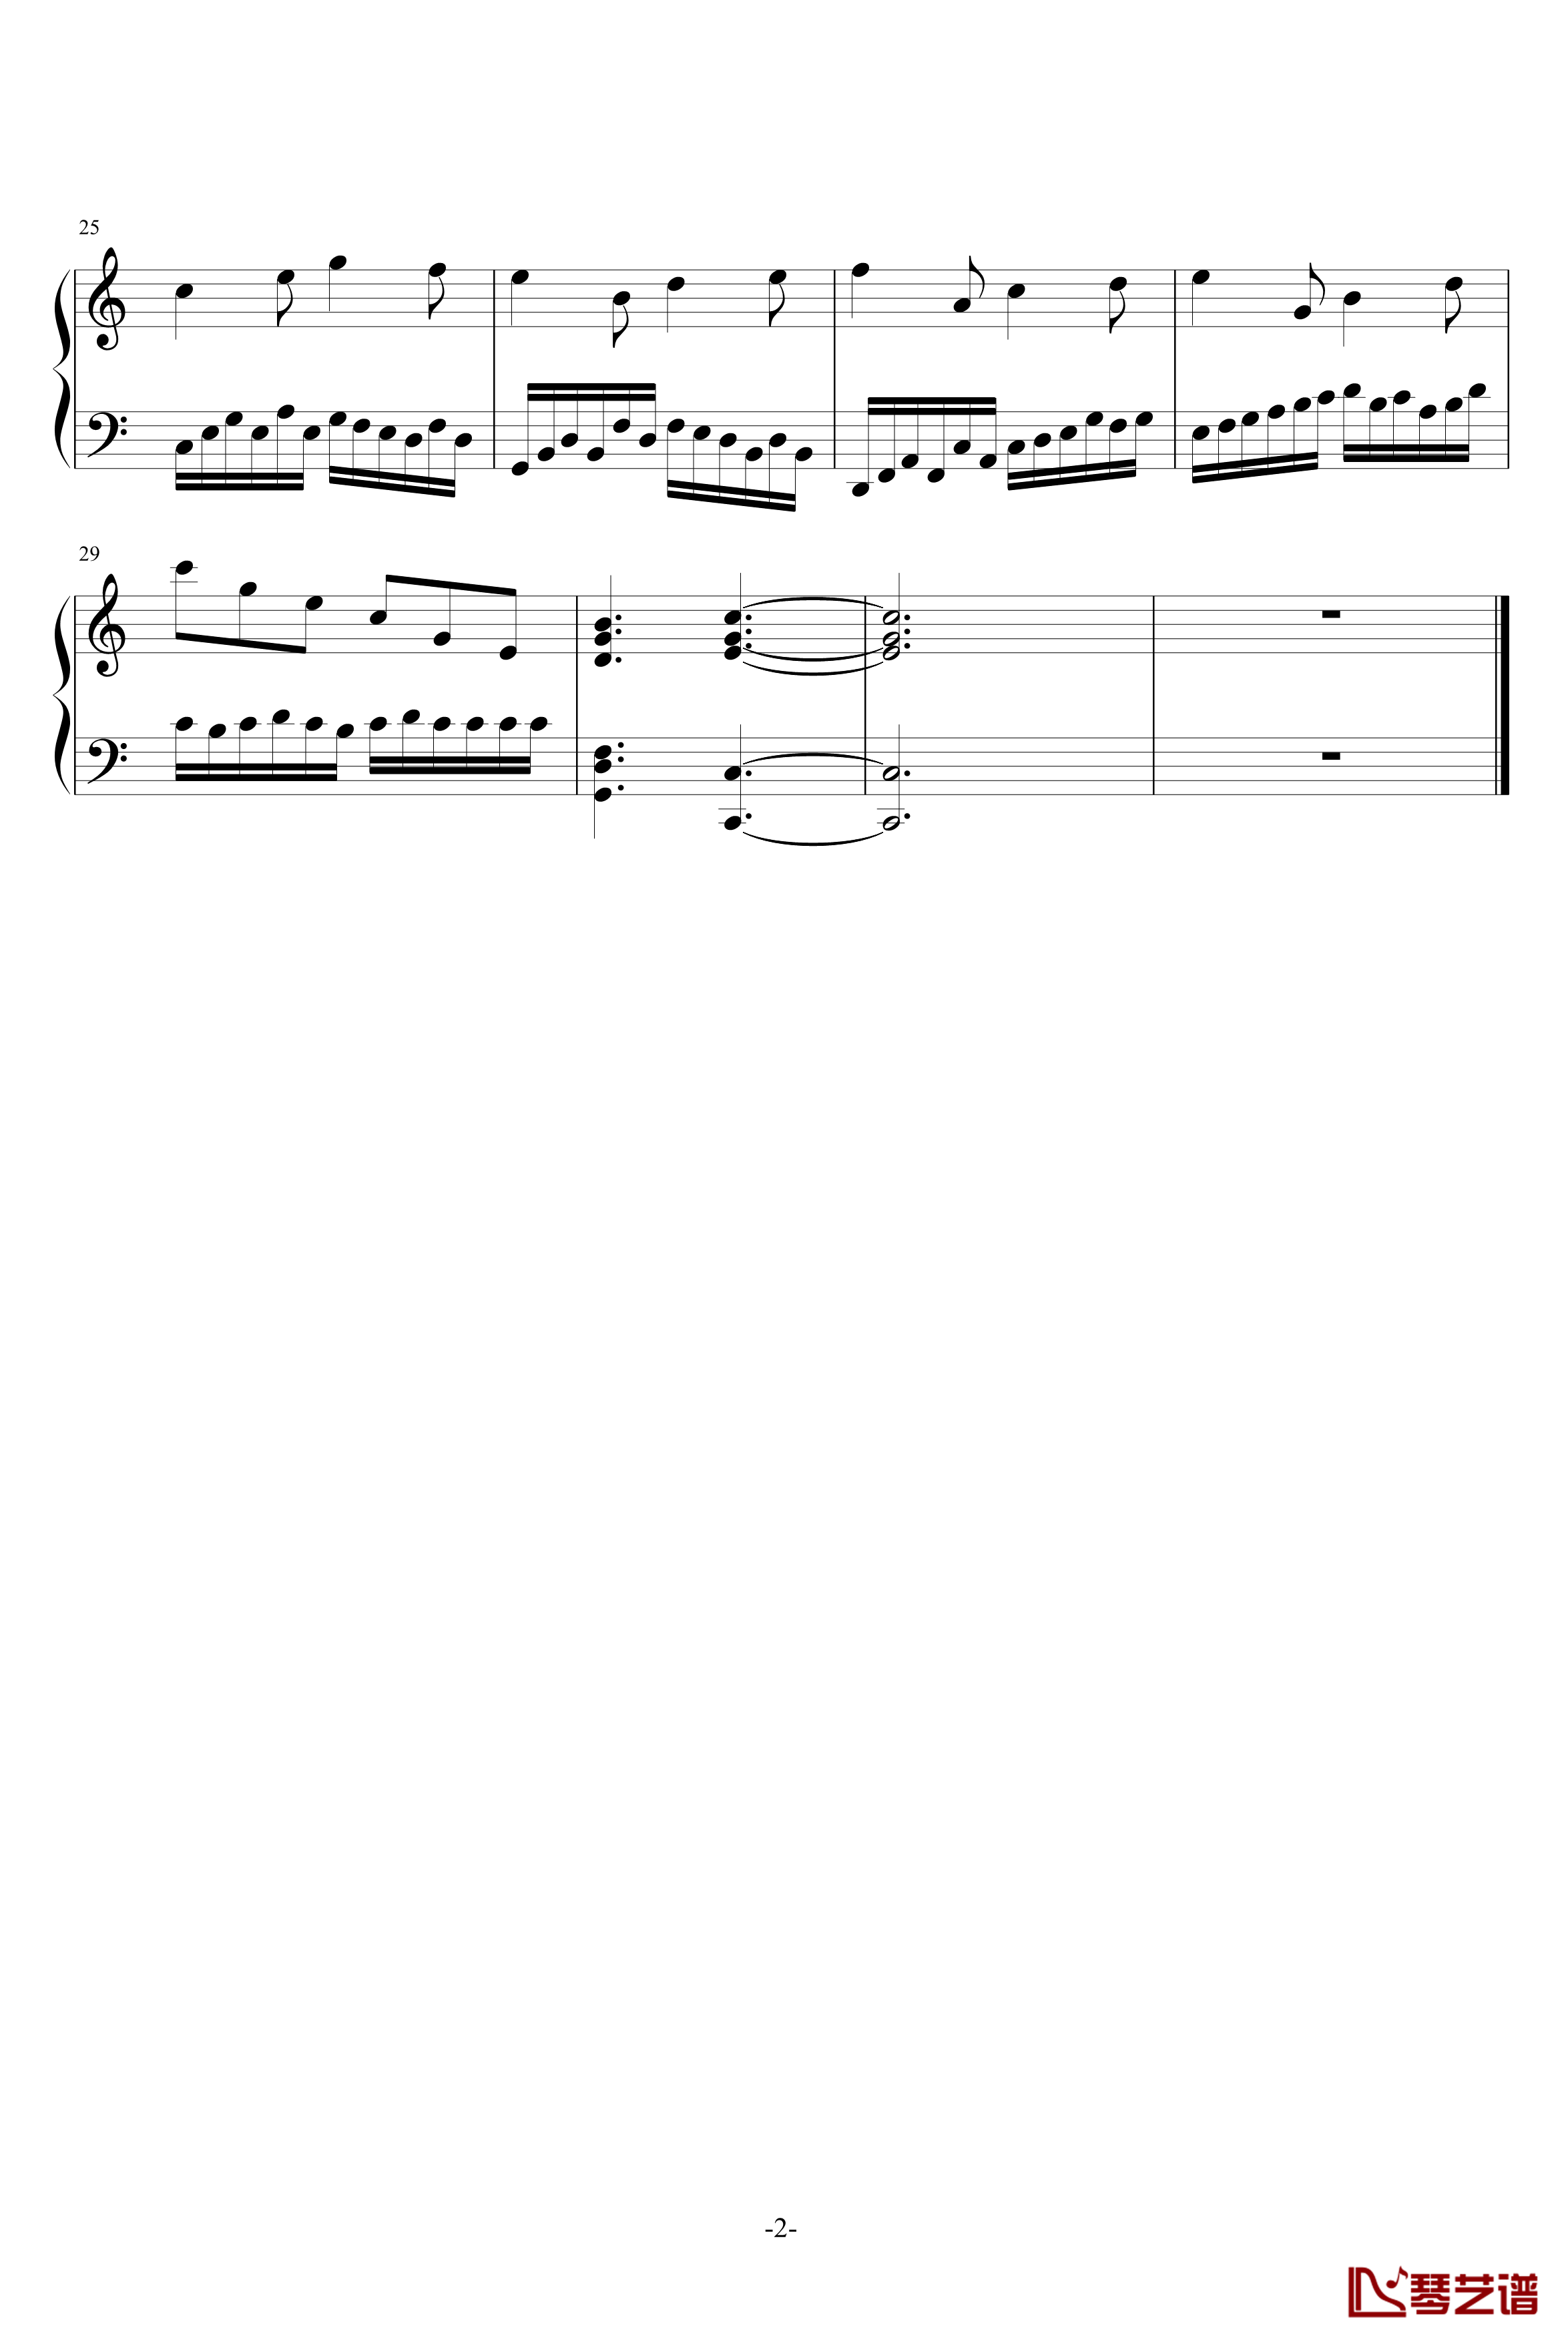 asun创意曲钢琴谱-献给小矮星-付奇山同学-asun06242